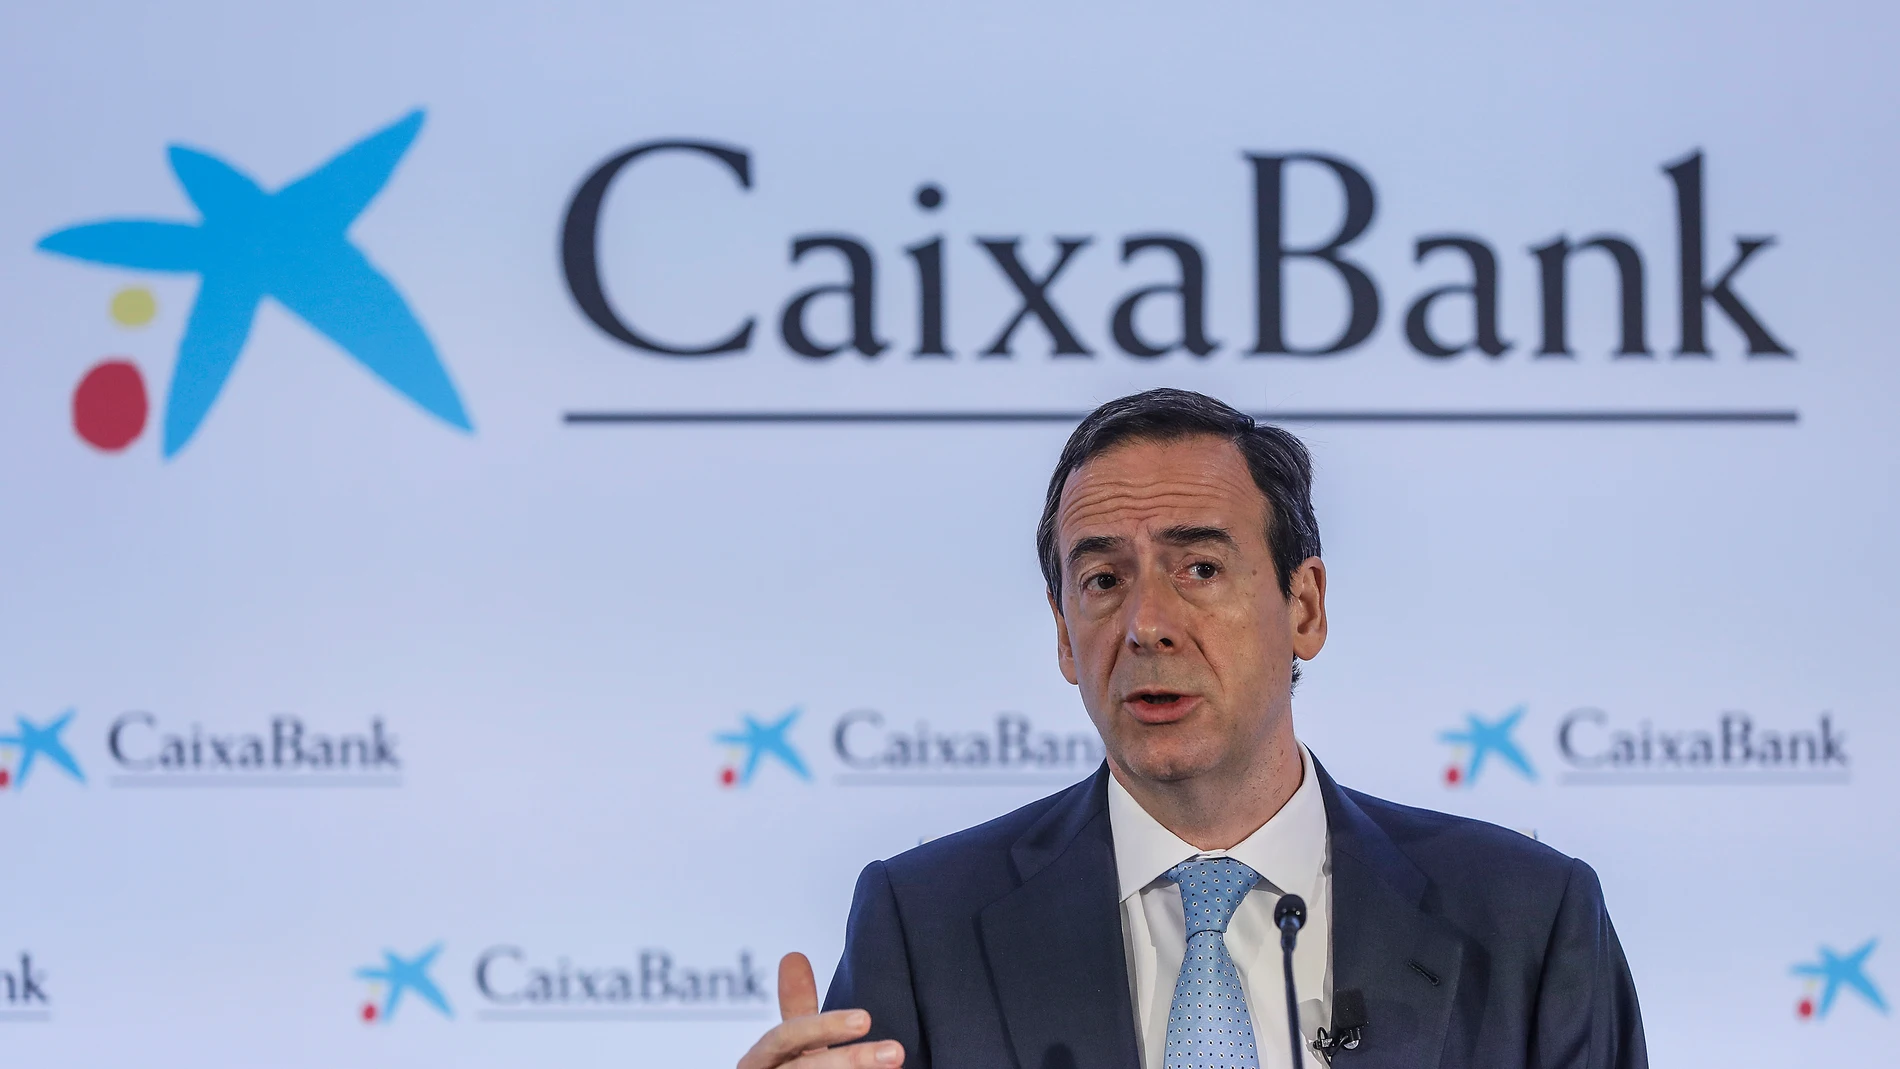 El consejero delegado de Caixabank, Gonzalo Gortázar, durante una rueda de prensa para presentar los resultados del primer trimestre de 2021